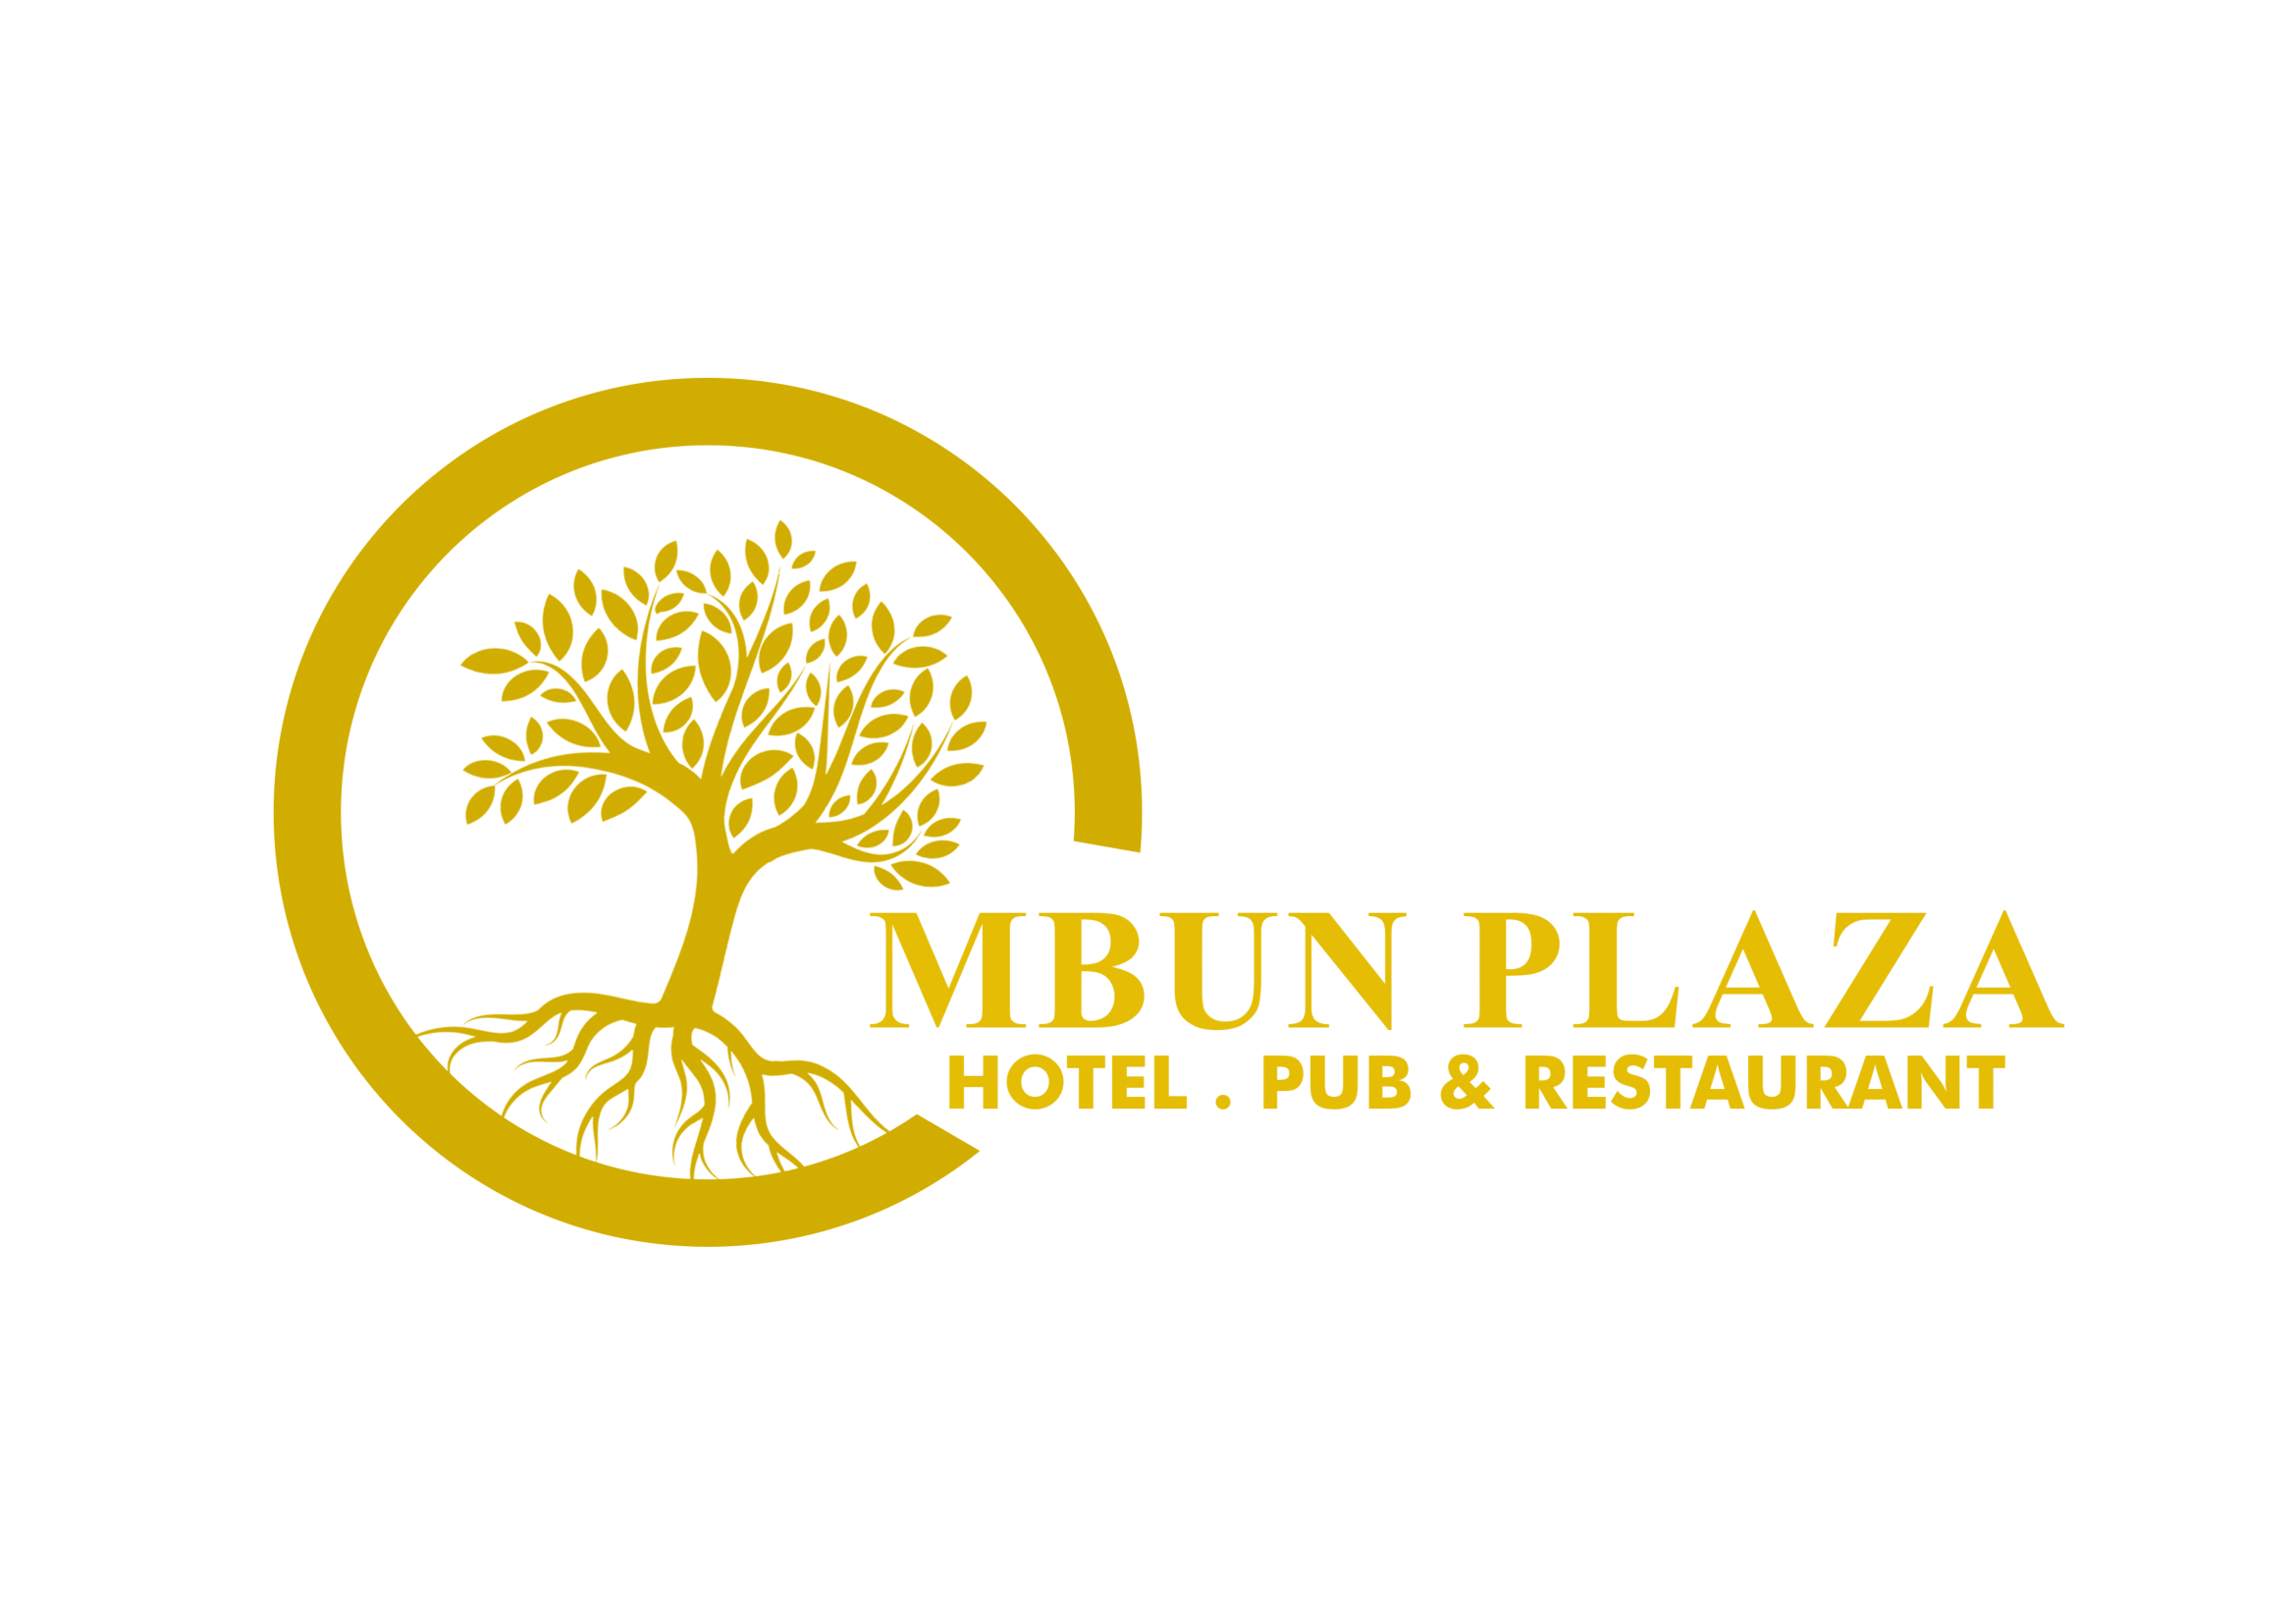 Mbun Plaza